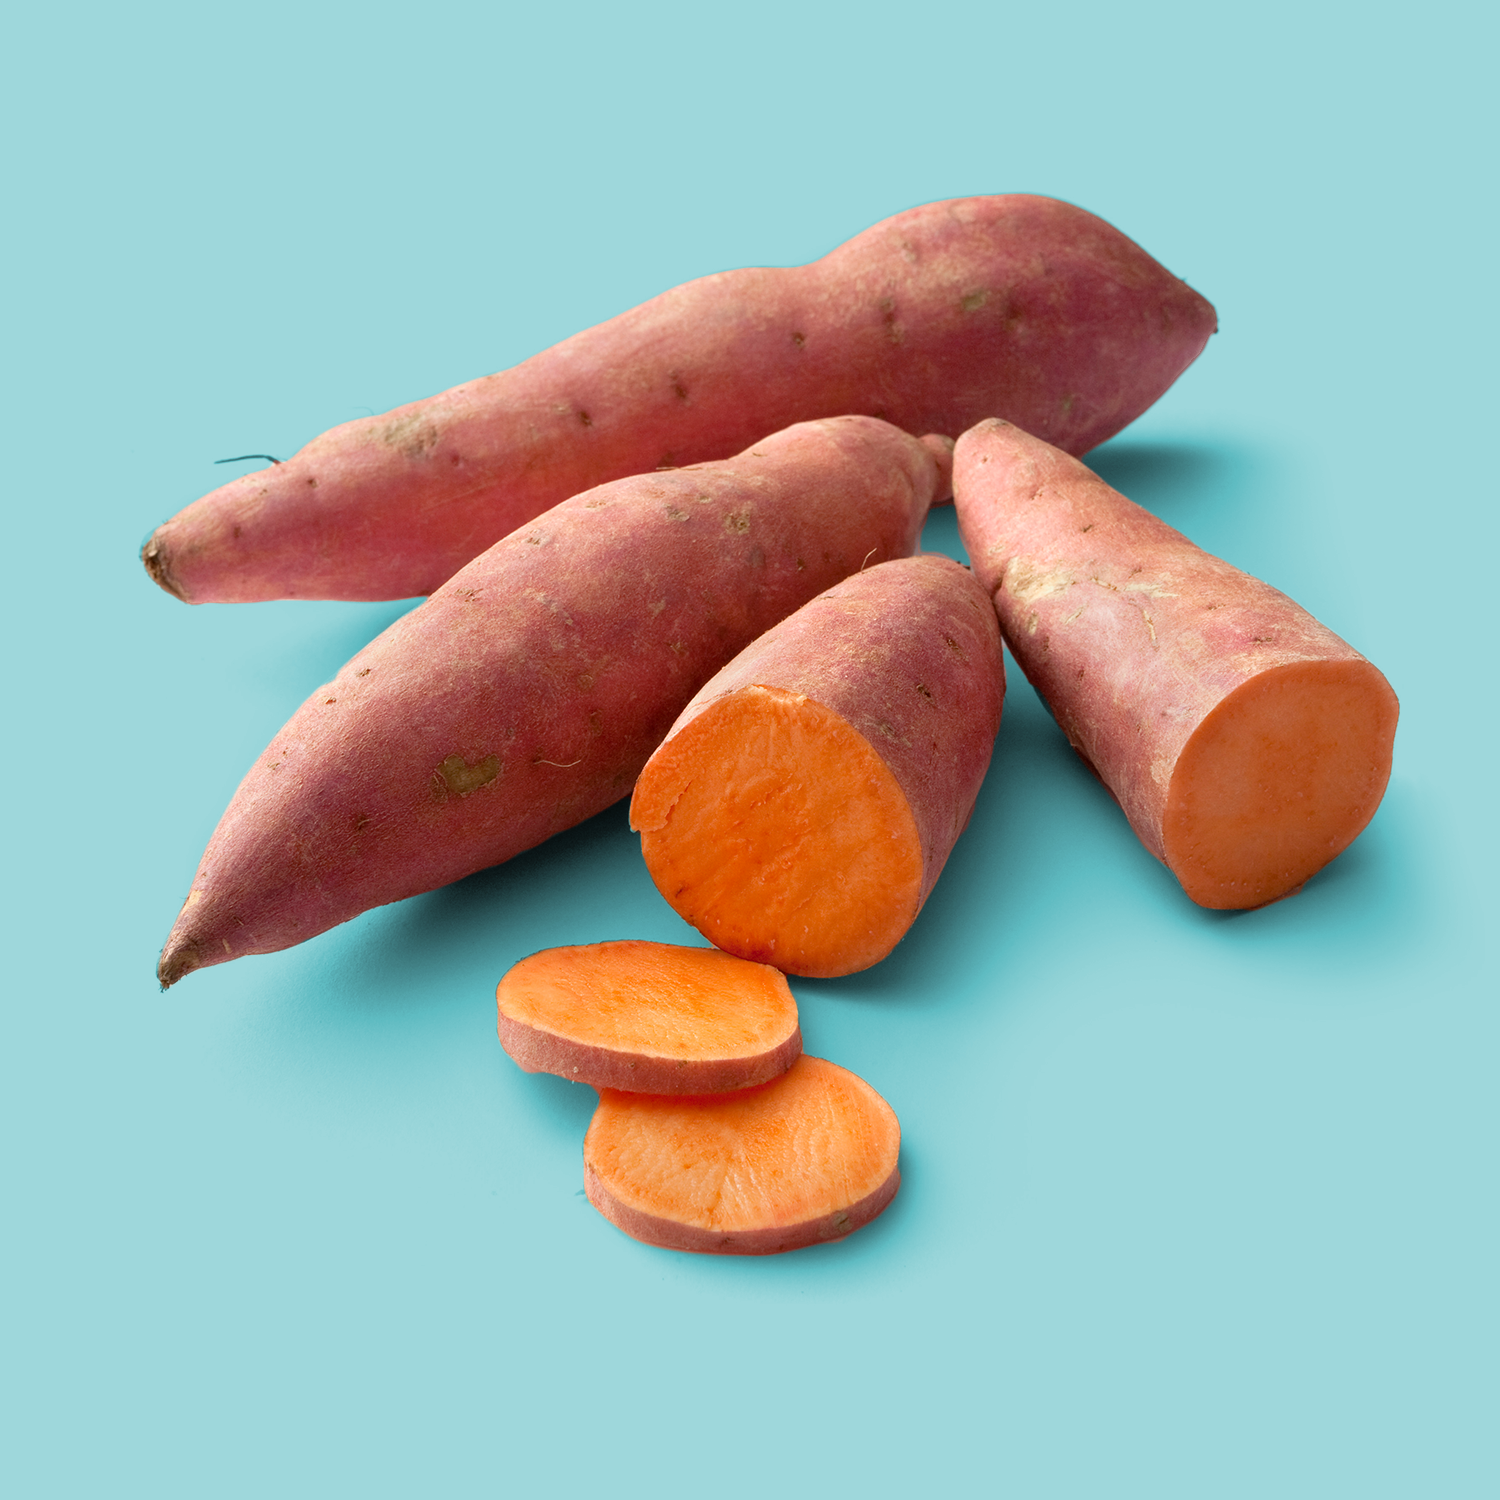 Root vegetable, Food, Sweet potato, Cervelat, Carrot, Yam, Frankfurter würstchen, Bologna sausage, Vienna sausage, Vegetable, 